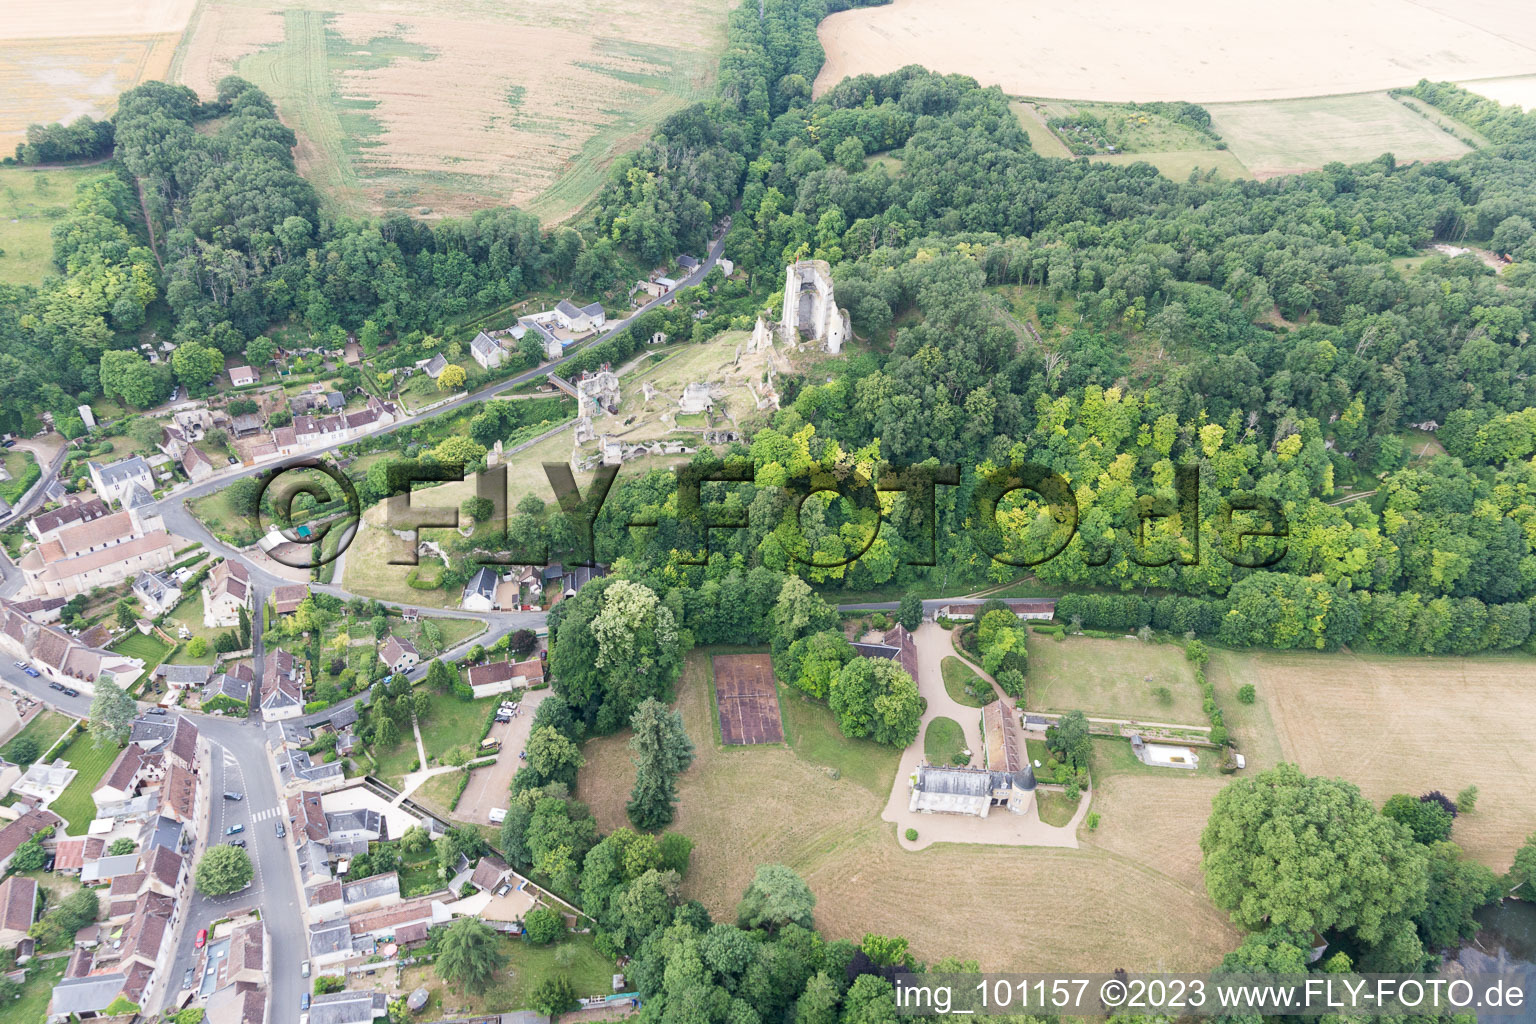 Lavardin im Bundesland Loir-et-Cher, Frankreich von einer Drohne aus